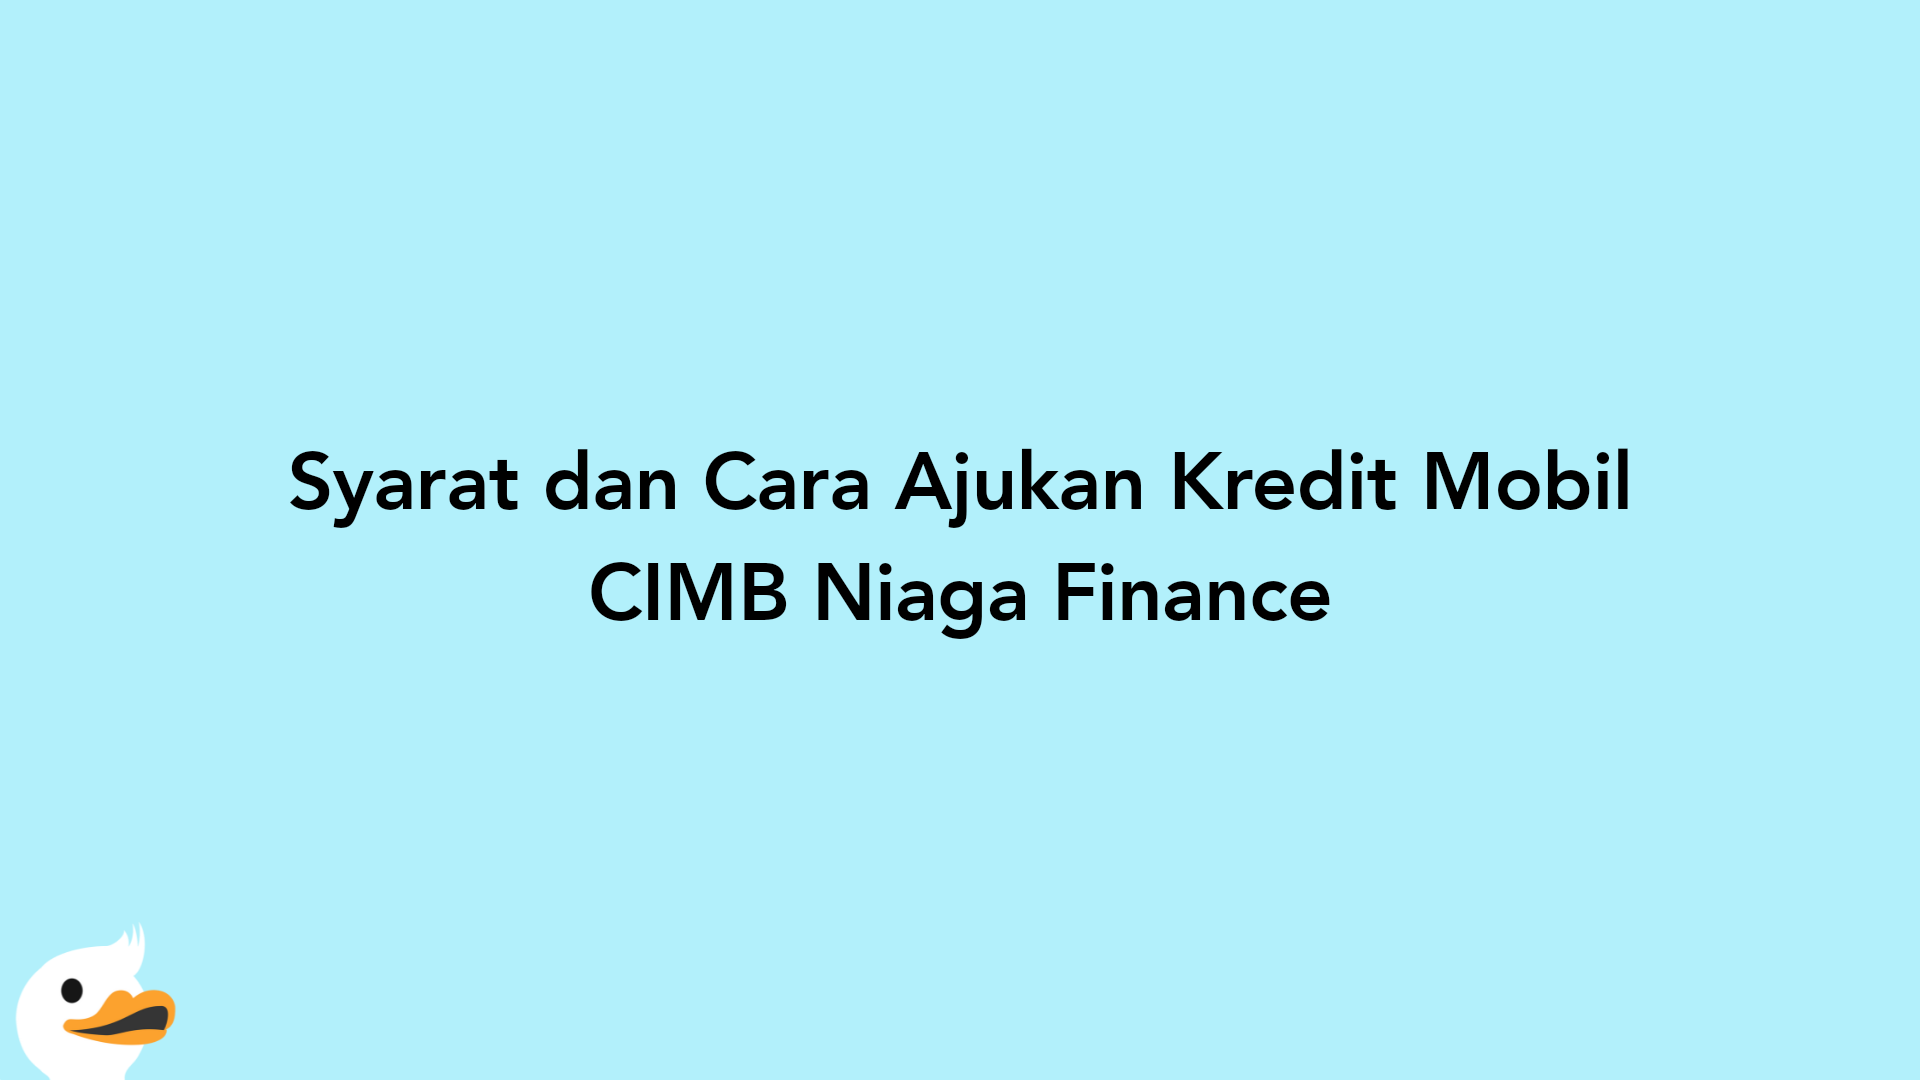 Syarat dan Cara Ajukan Kredit Mobil CIMB Niaga Finance